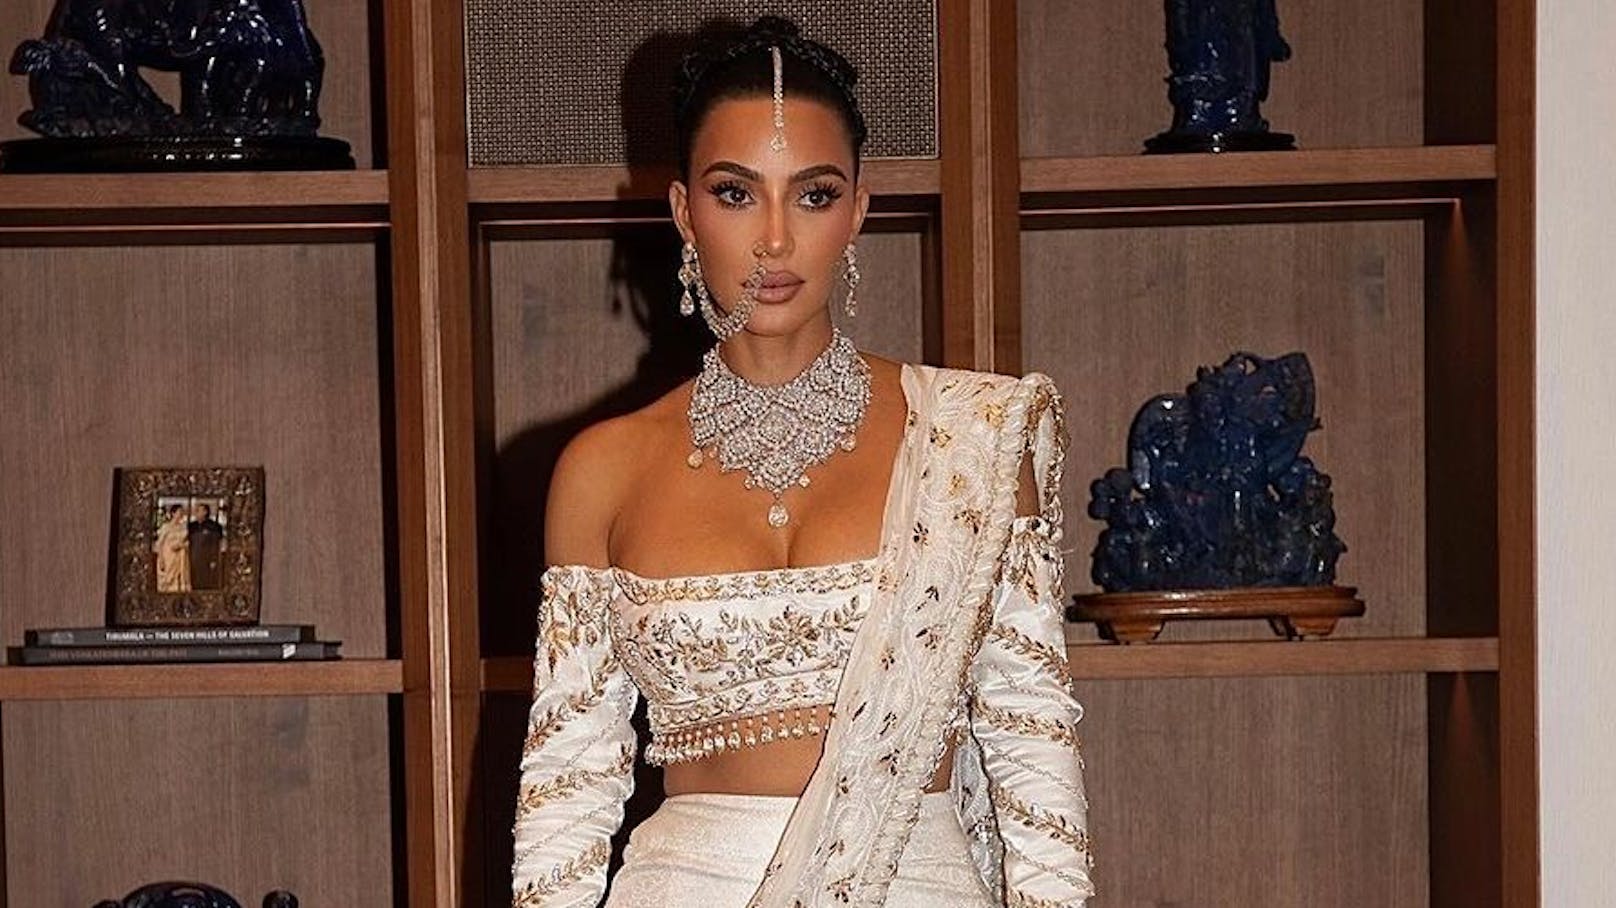 Kim Kardashian kassiert Shitstorm für "indische" Looks